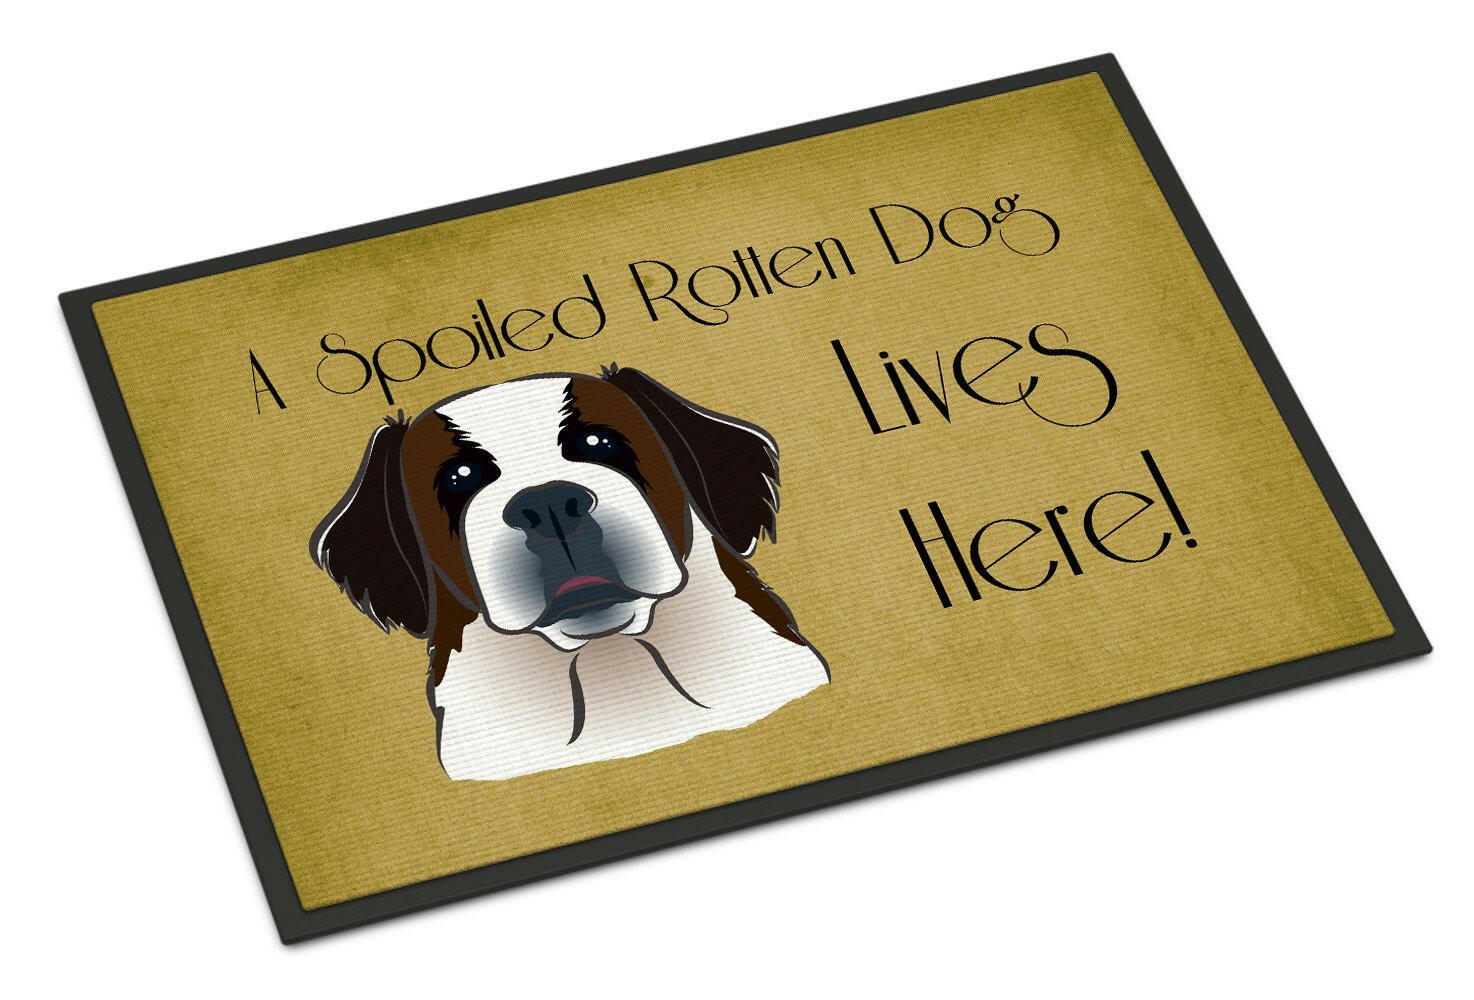 Saint Bernard Spoiled Dog Lives Here Indoor or Outdoor Mat 18x27 BB1494MAT - the-store.com